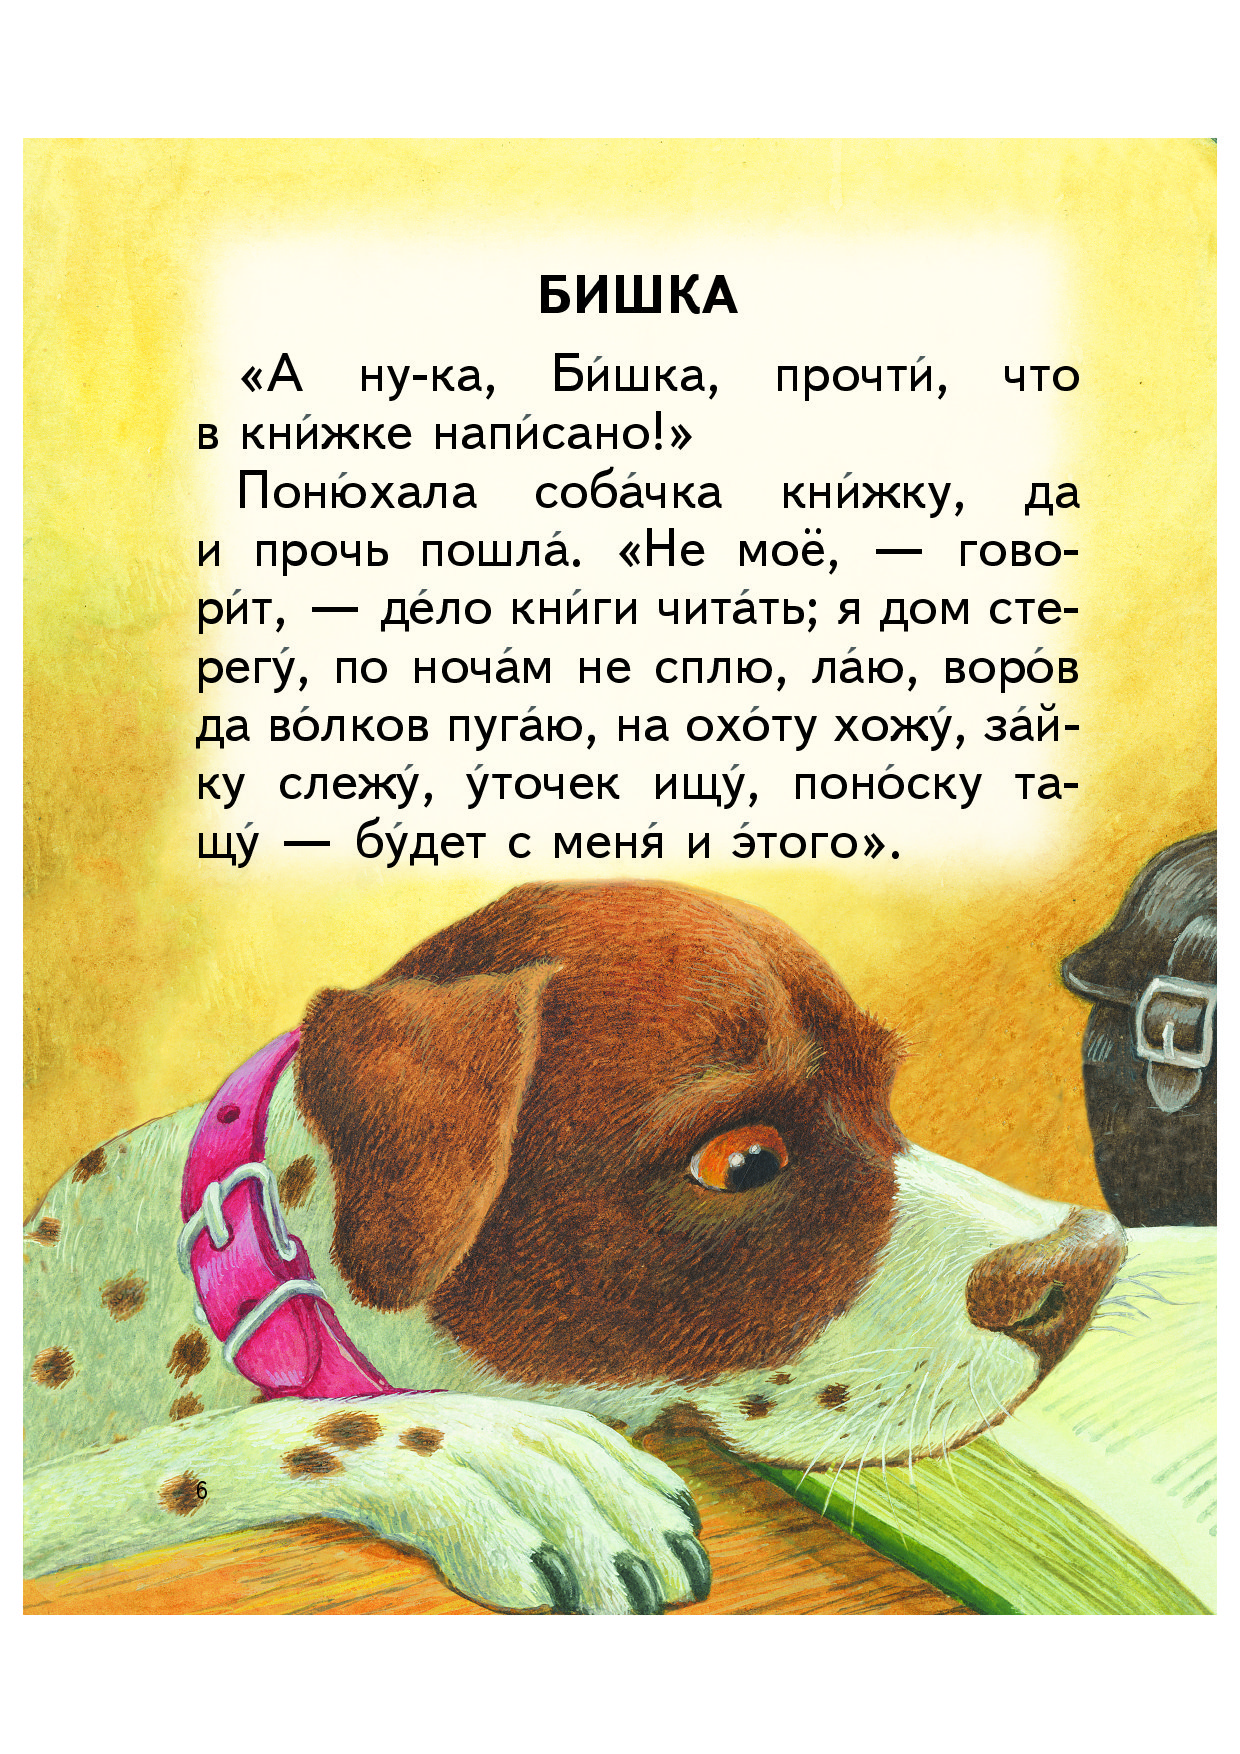 Читать любой класс. Собачка Бишка Ушинский. Маленькие рассказы. Небольшой рассказ. Маленькие рассказы для детей.